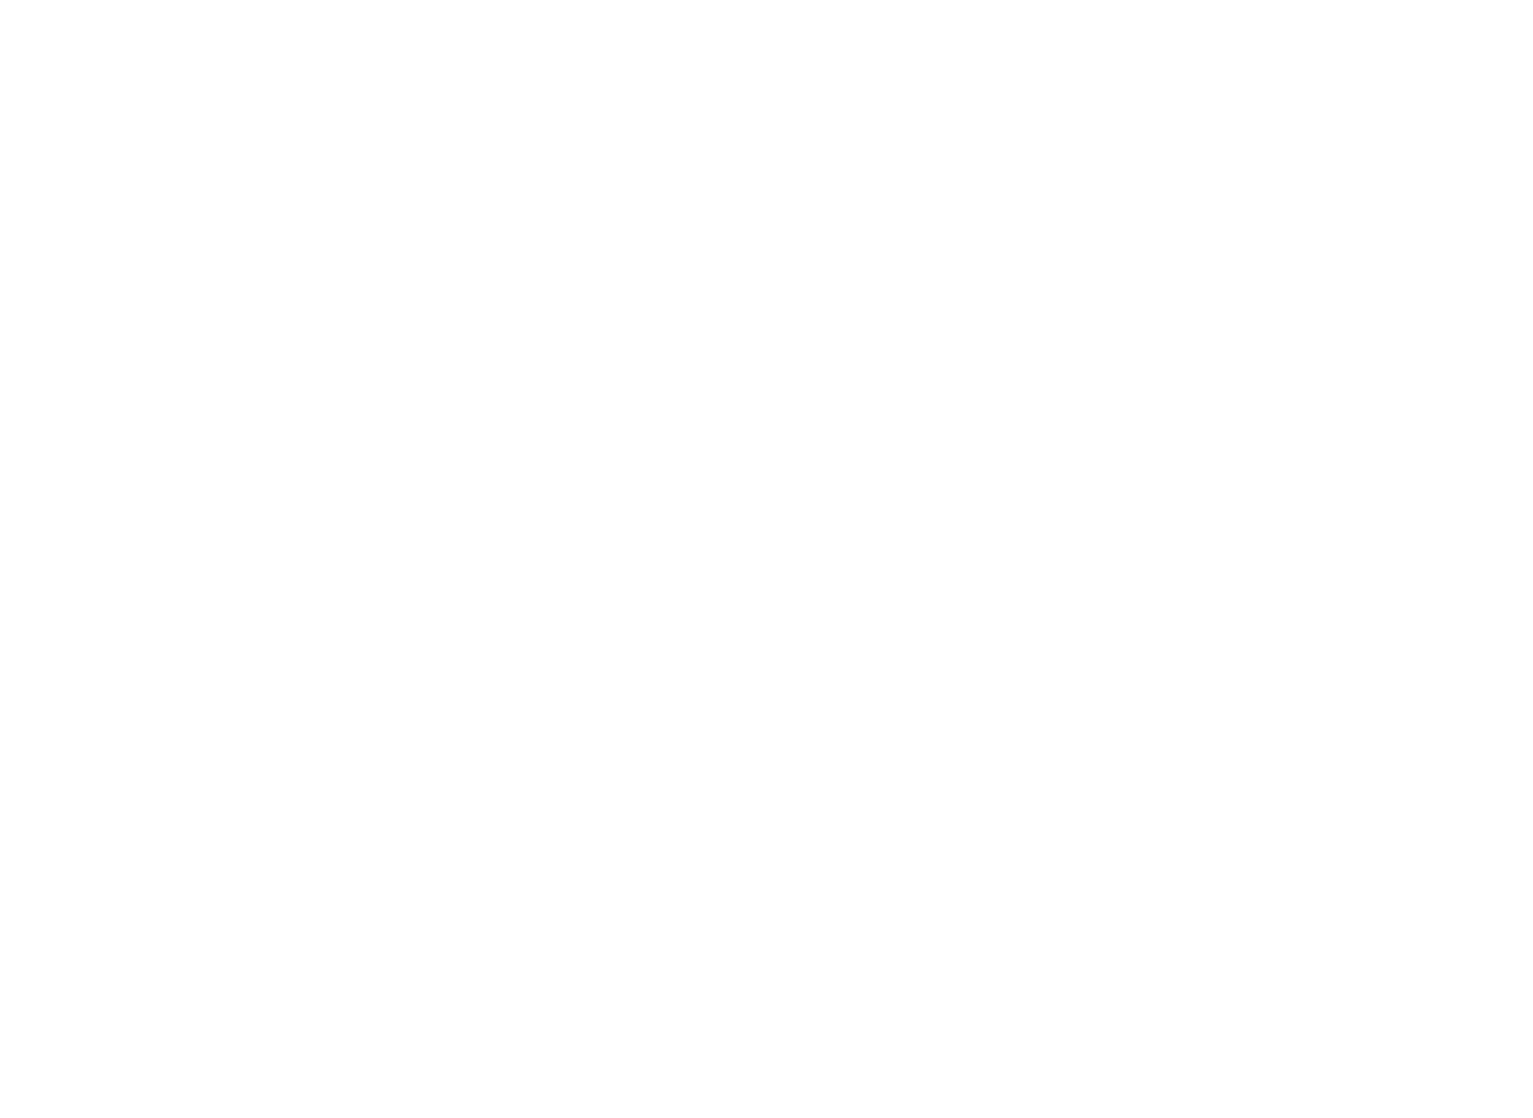 Iguatemi logo for dark backgrounds (transparent PNG)